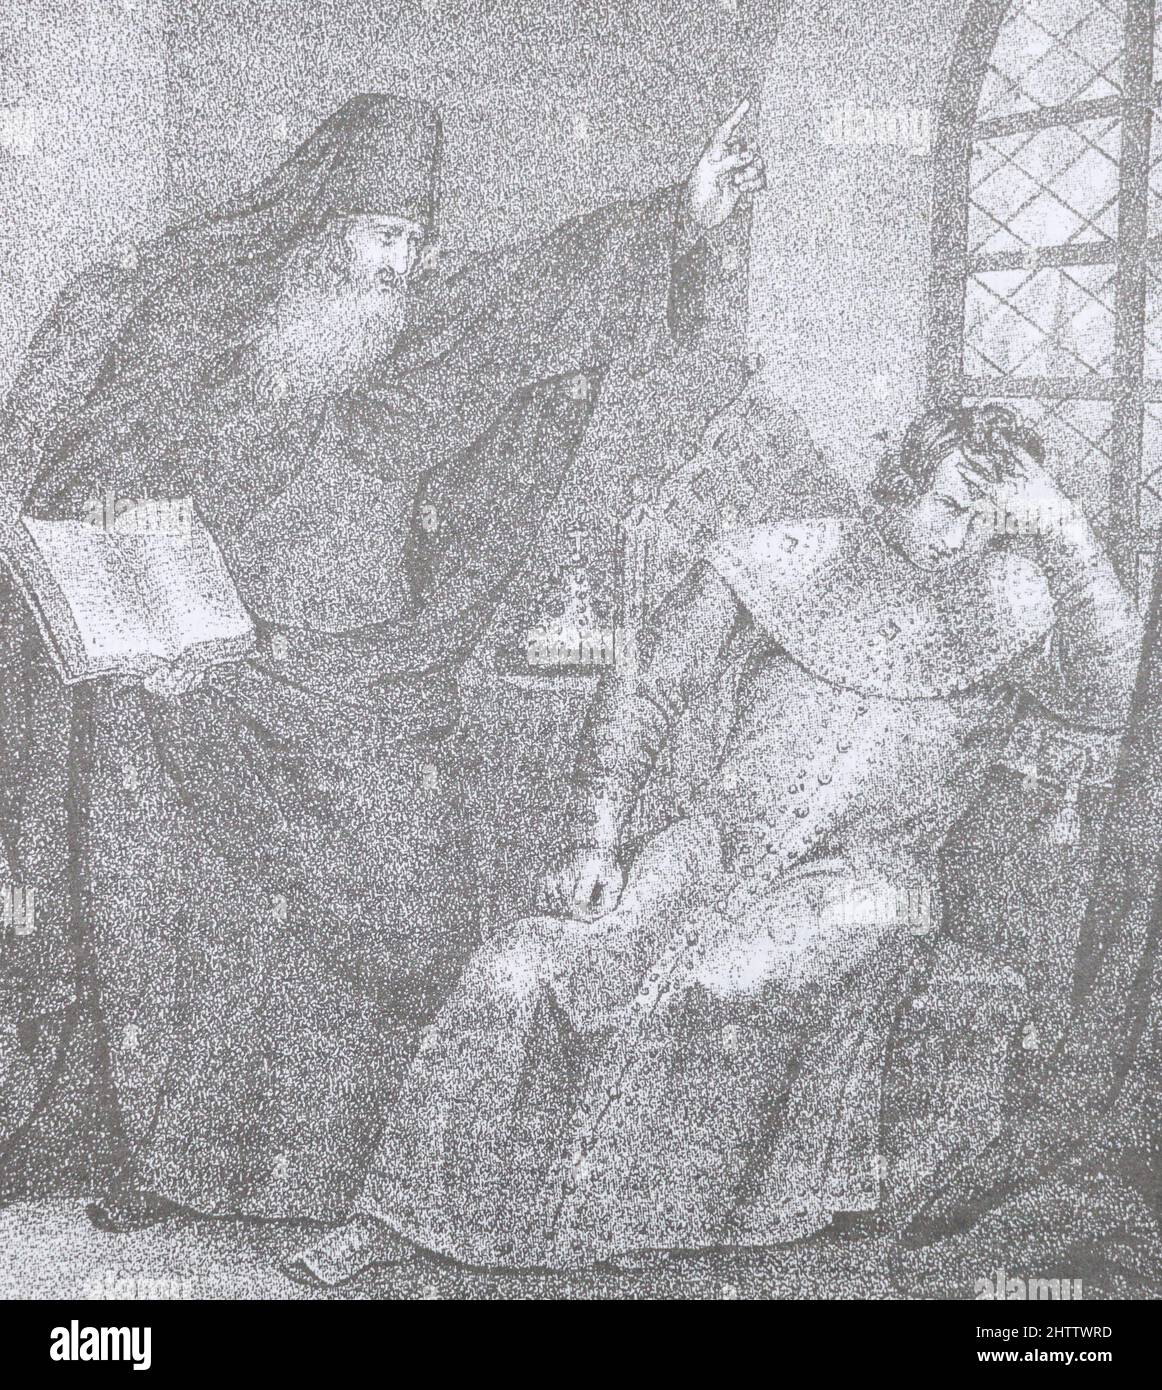 Sylvester, ayant ouvert la Sainte écriture devant le tsar Ivan IV, le comète comme un exécuteur zélé des chartes. Gravure médiévale. Banque D'Images